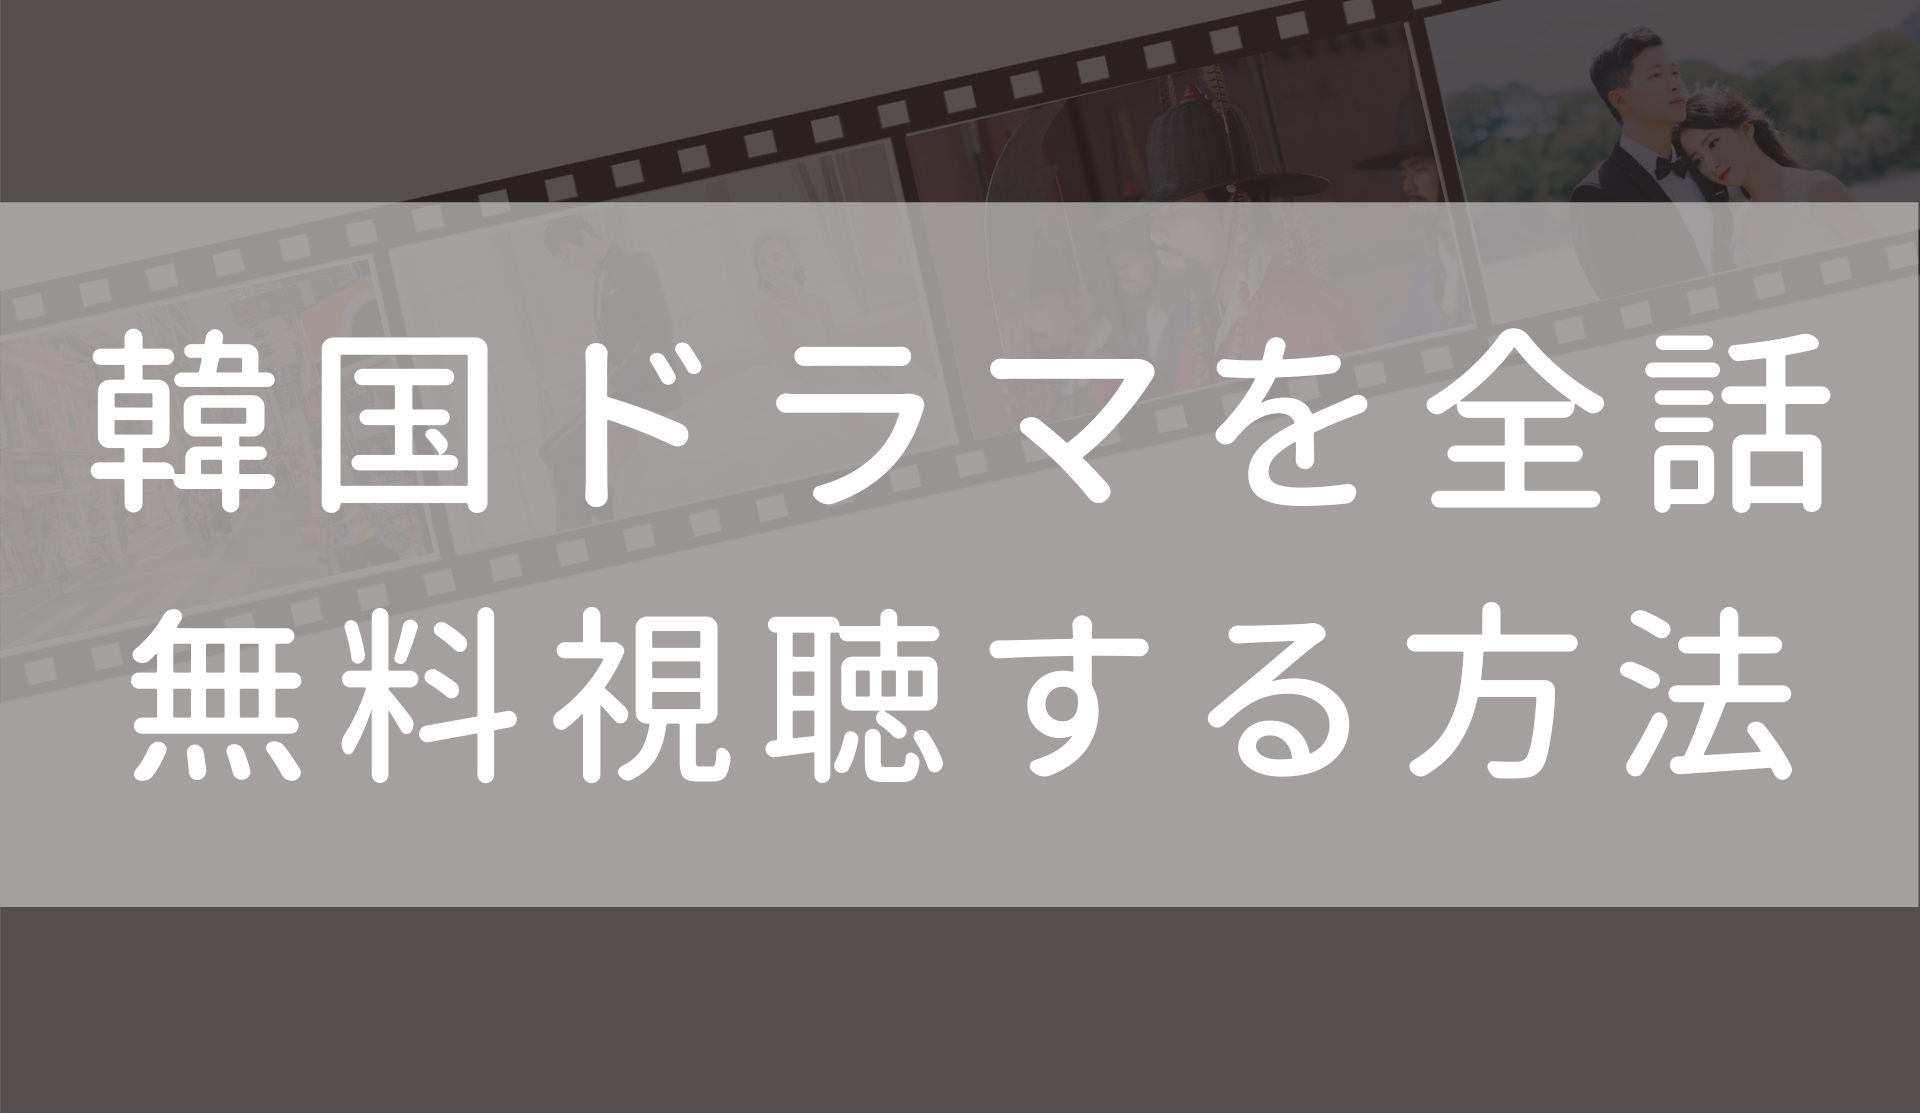 ロイヤルファミリー 日本語字幕 吹き替え 動画を全話無料で合法に視聴する方法まとめ Fuku Hack Times